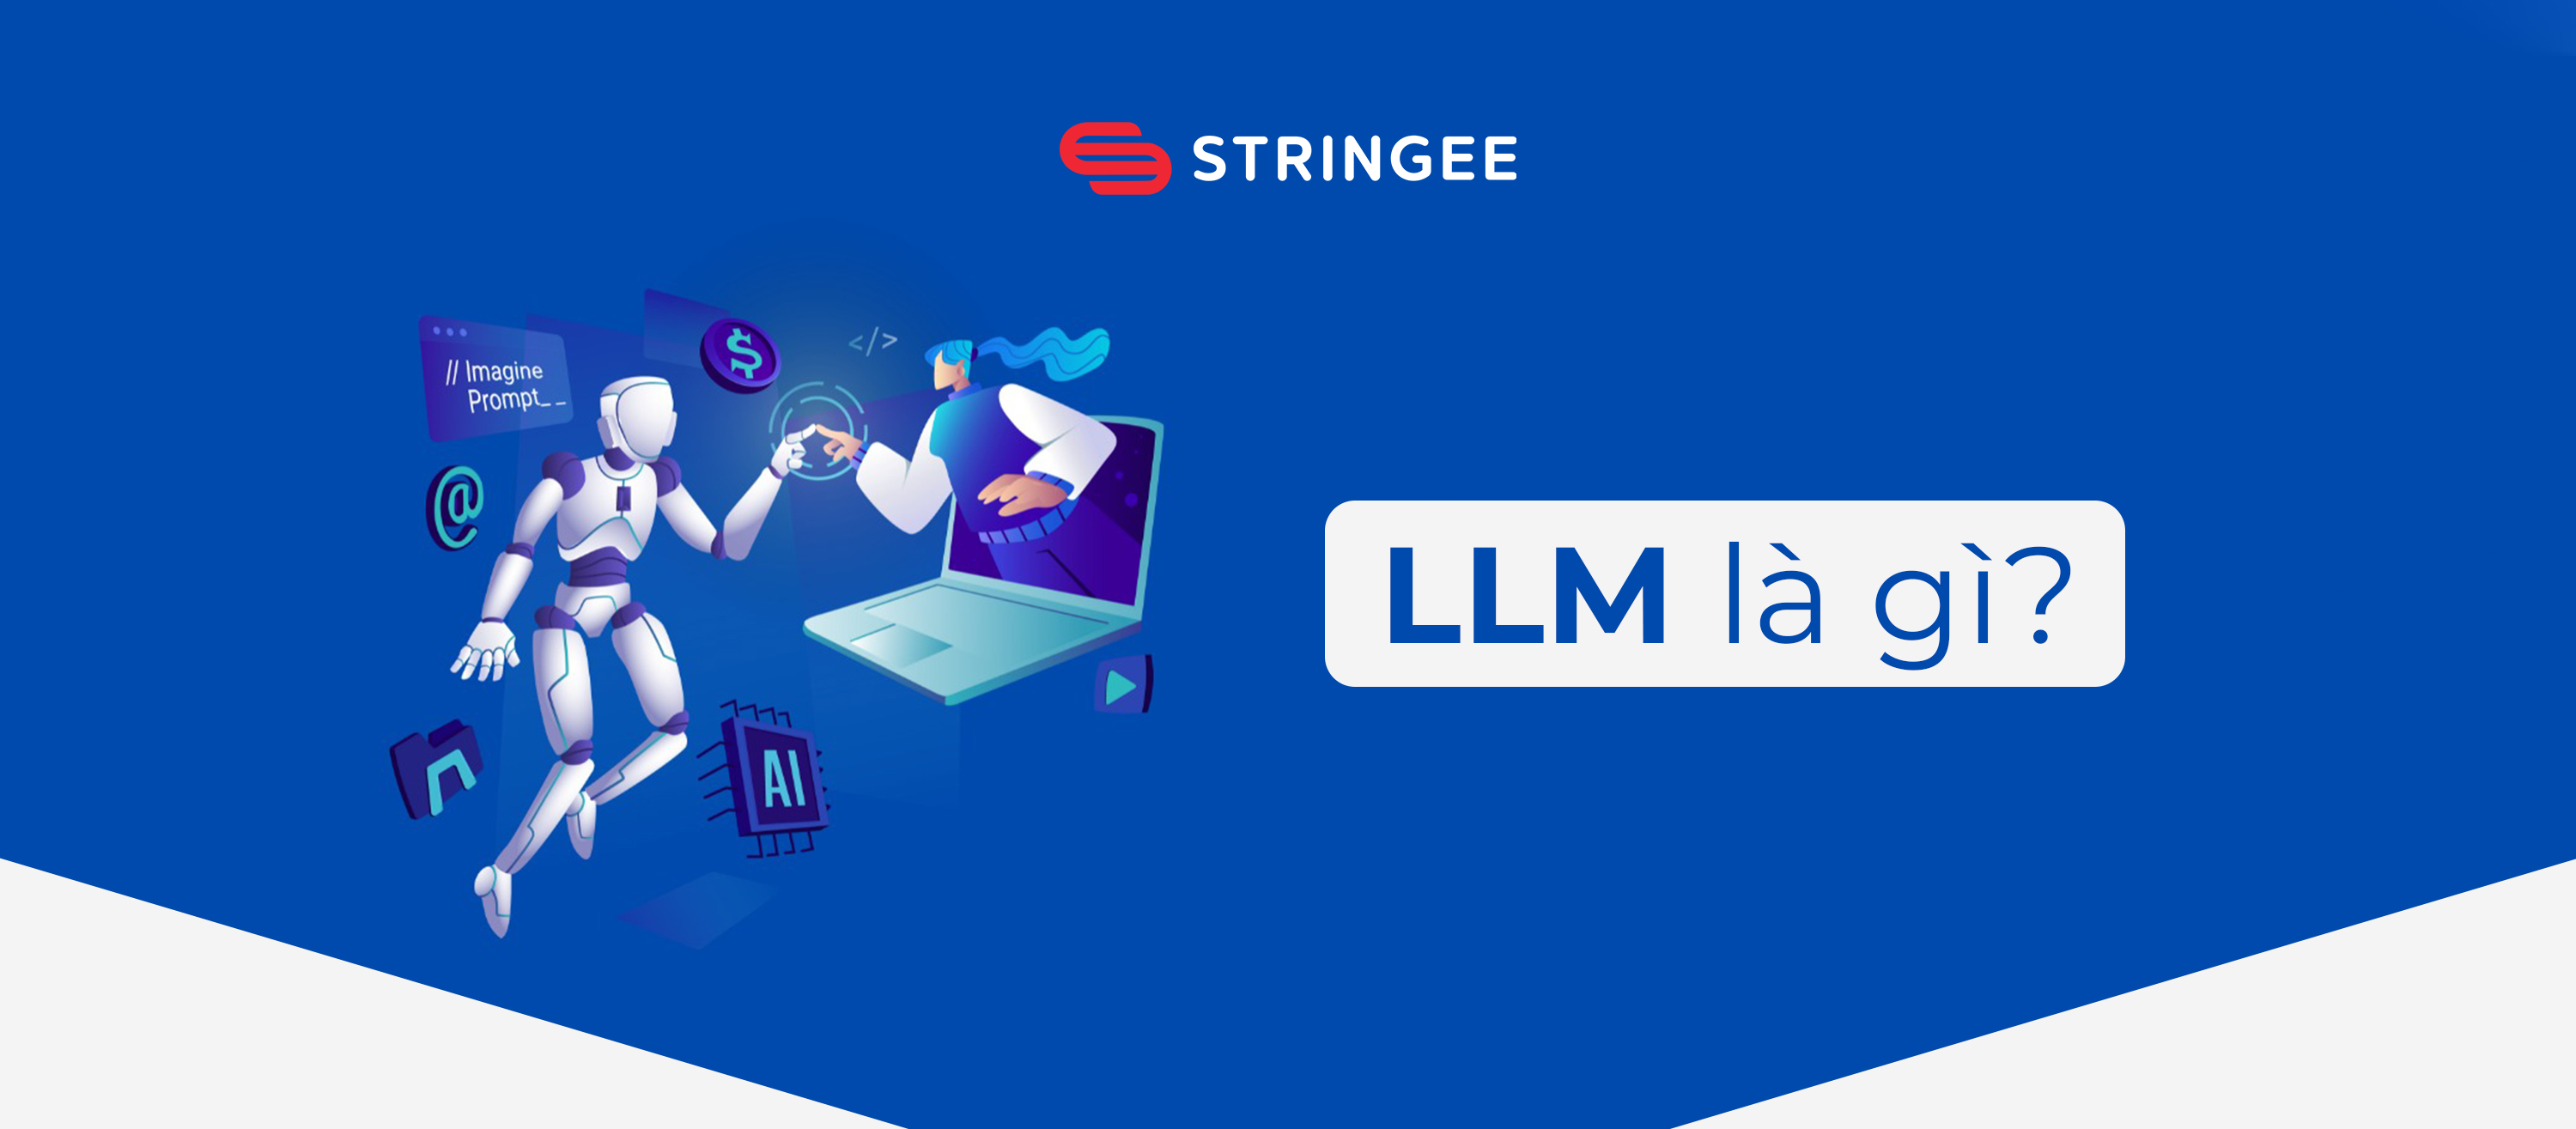 Mô hình ngôn ngữ lớn (LLM) là gì? Các thành phần cơ bản của LLM